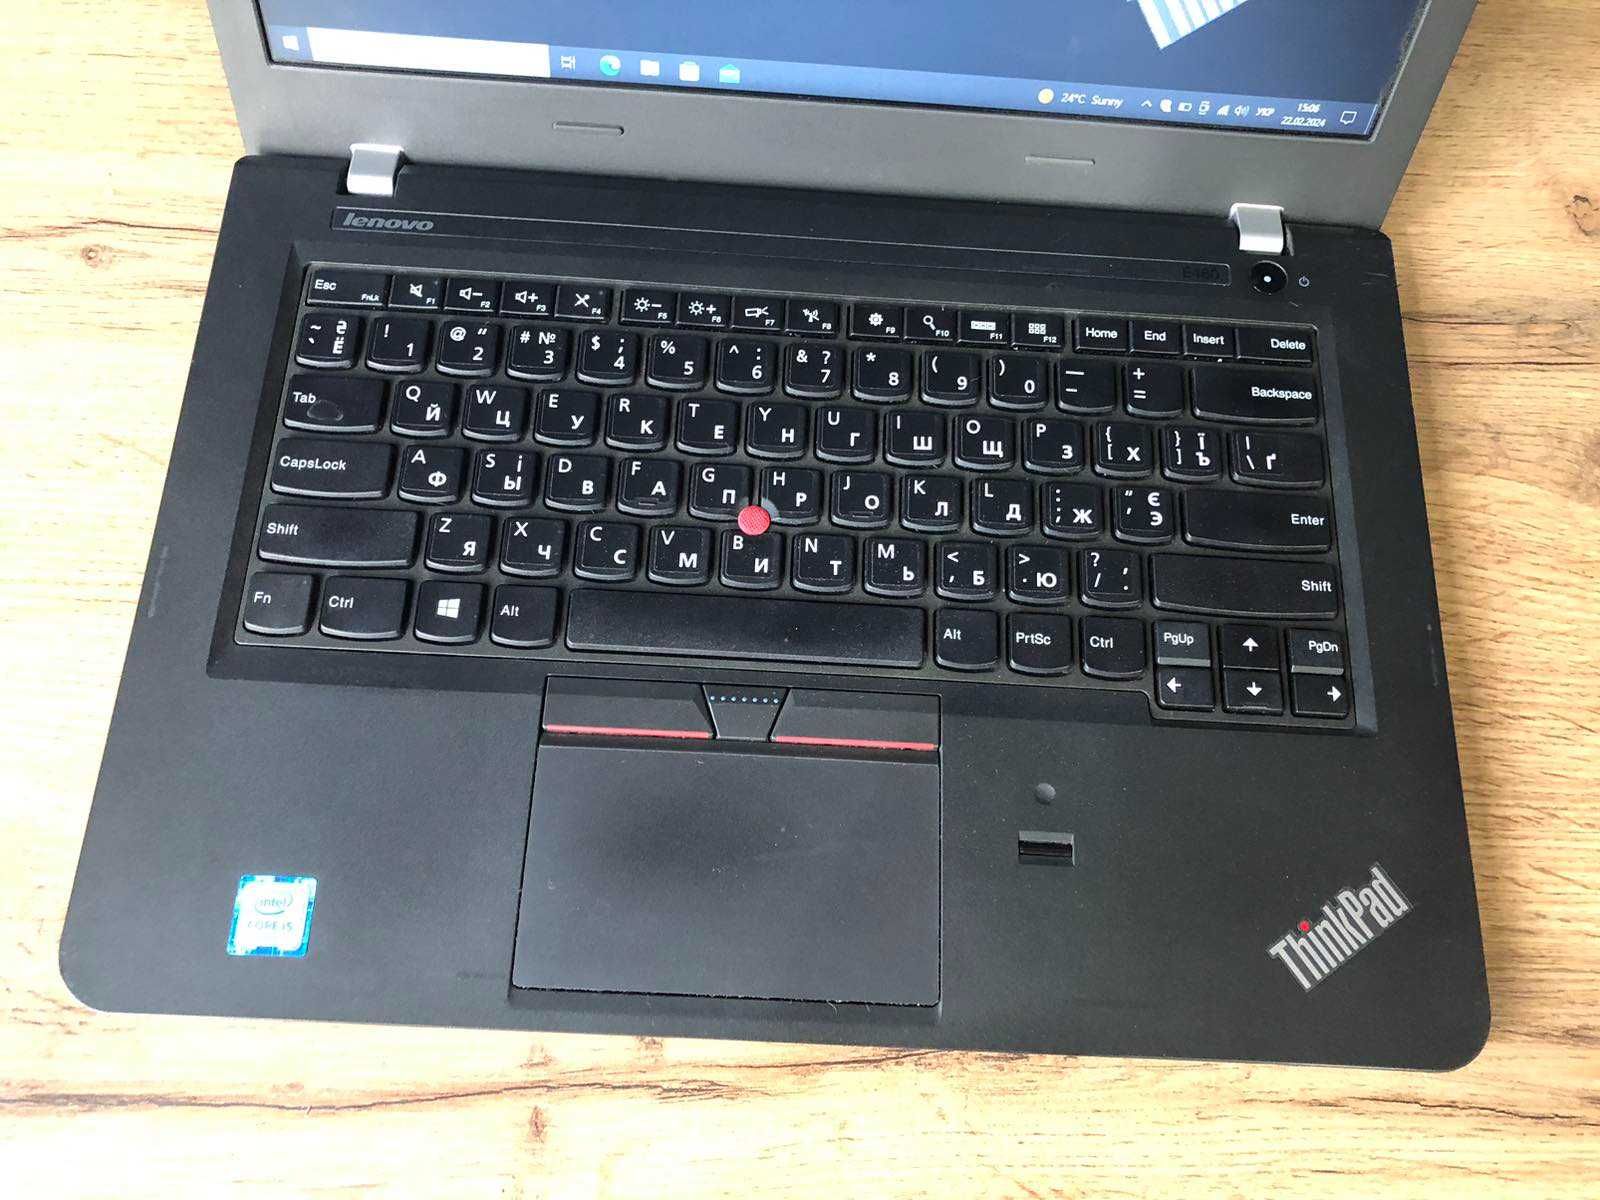 Гарантия! Ультрабук Lenovo ThinkPad E460 | i5-6200u | 16Gb | 256GB SSD